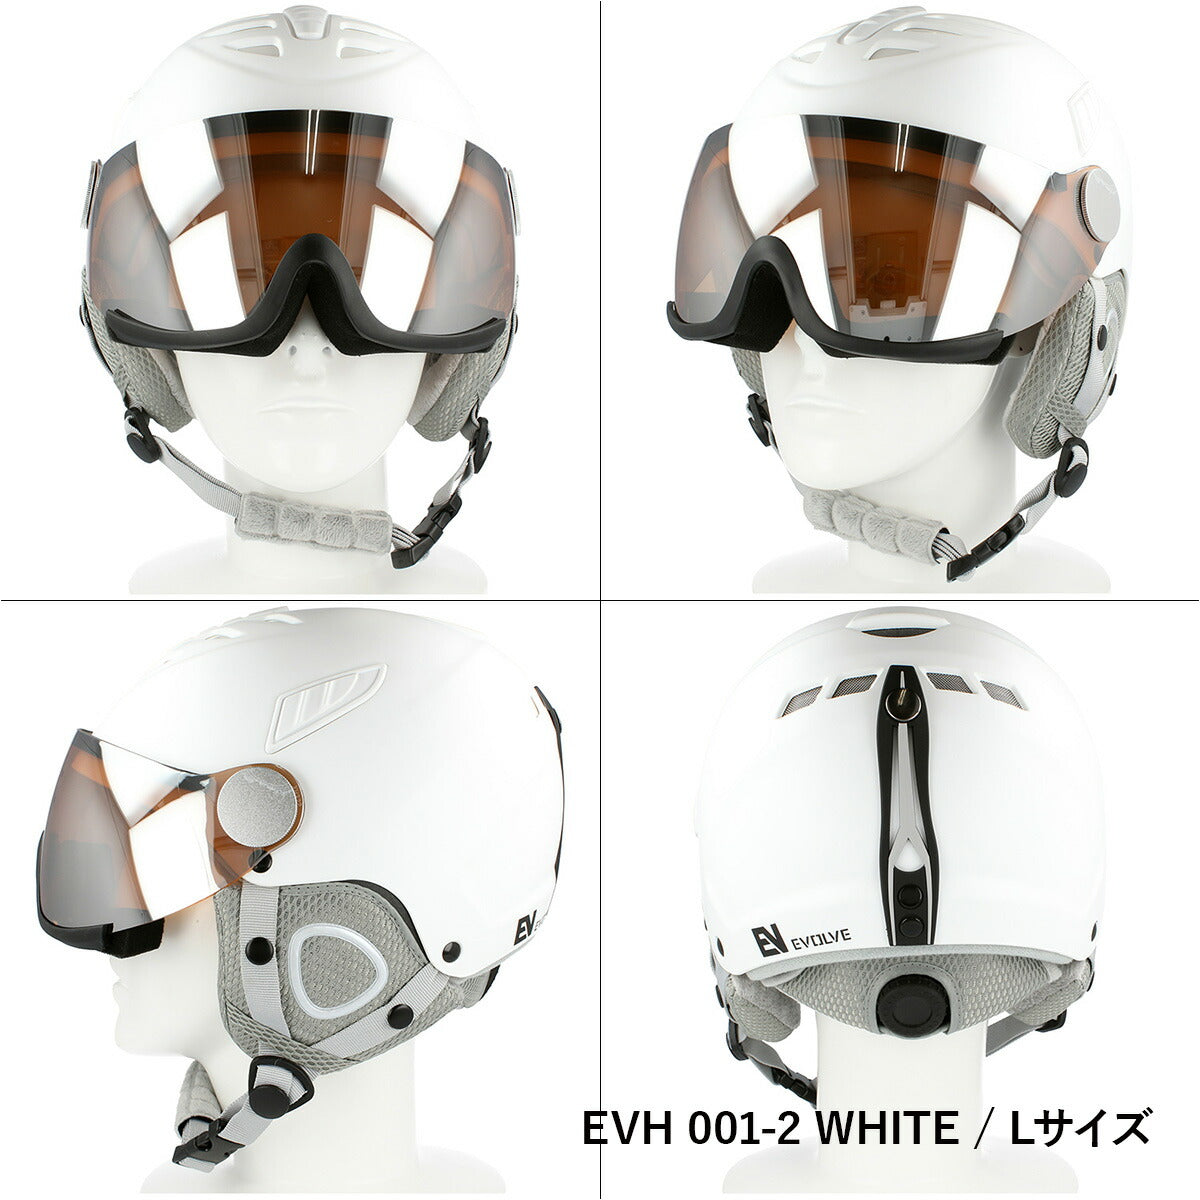 イヴァルブ ヘルメット EVH 001 2サイズ / EVH 002 2サイズ メンズ レディース ユニセックス スノーボード ヘルメット スノボヘルメット スキーヘルメット バイザーヘルメット 【EVOLVE】